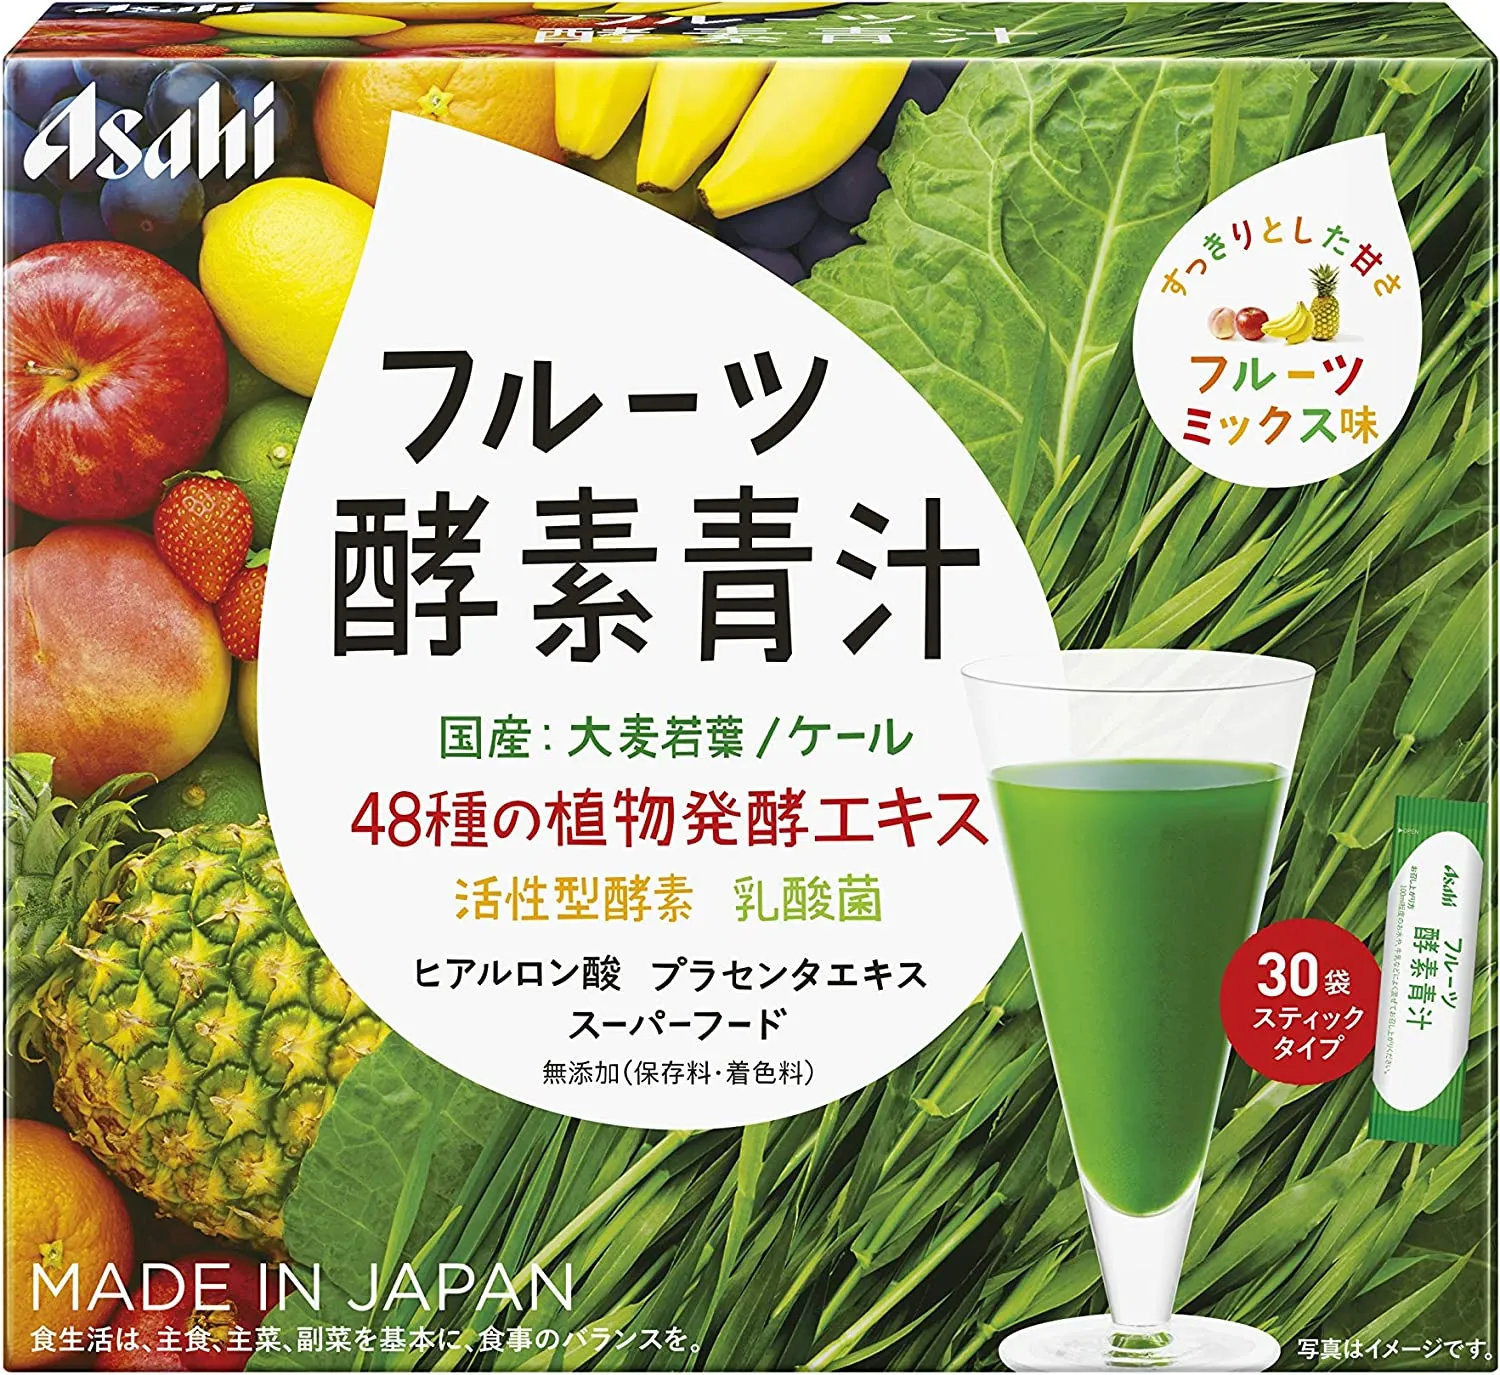 Фруктовый аодзиру с растительными ферментами и лактобактериями Asahi Fruit Enzyme Green Juice